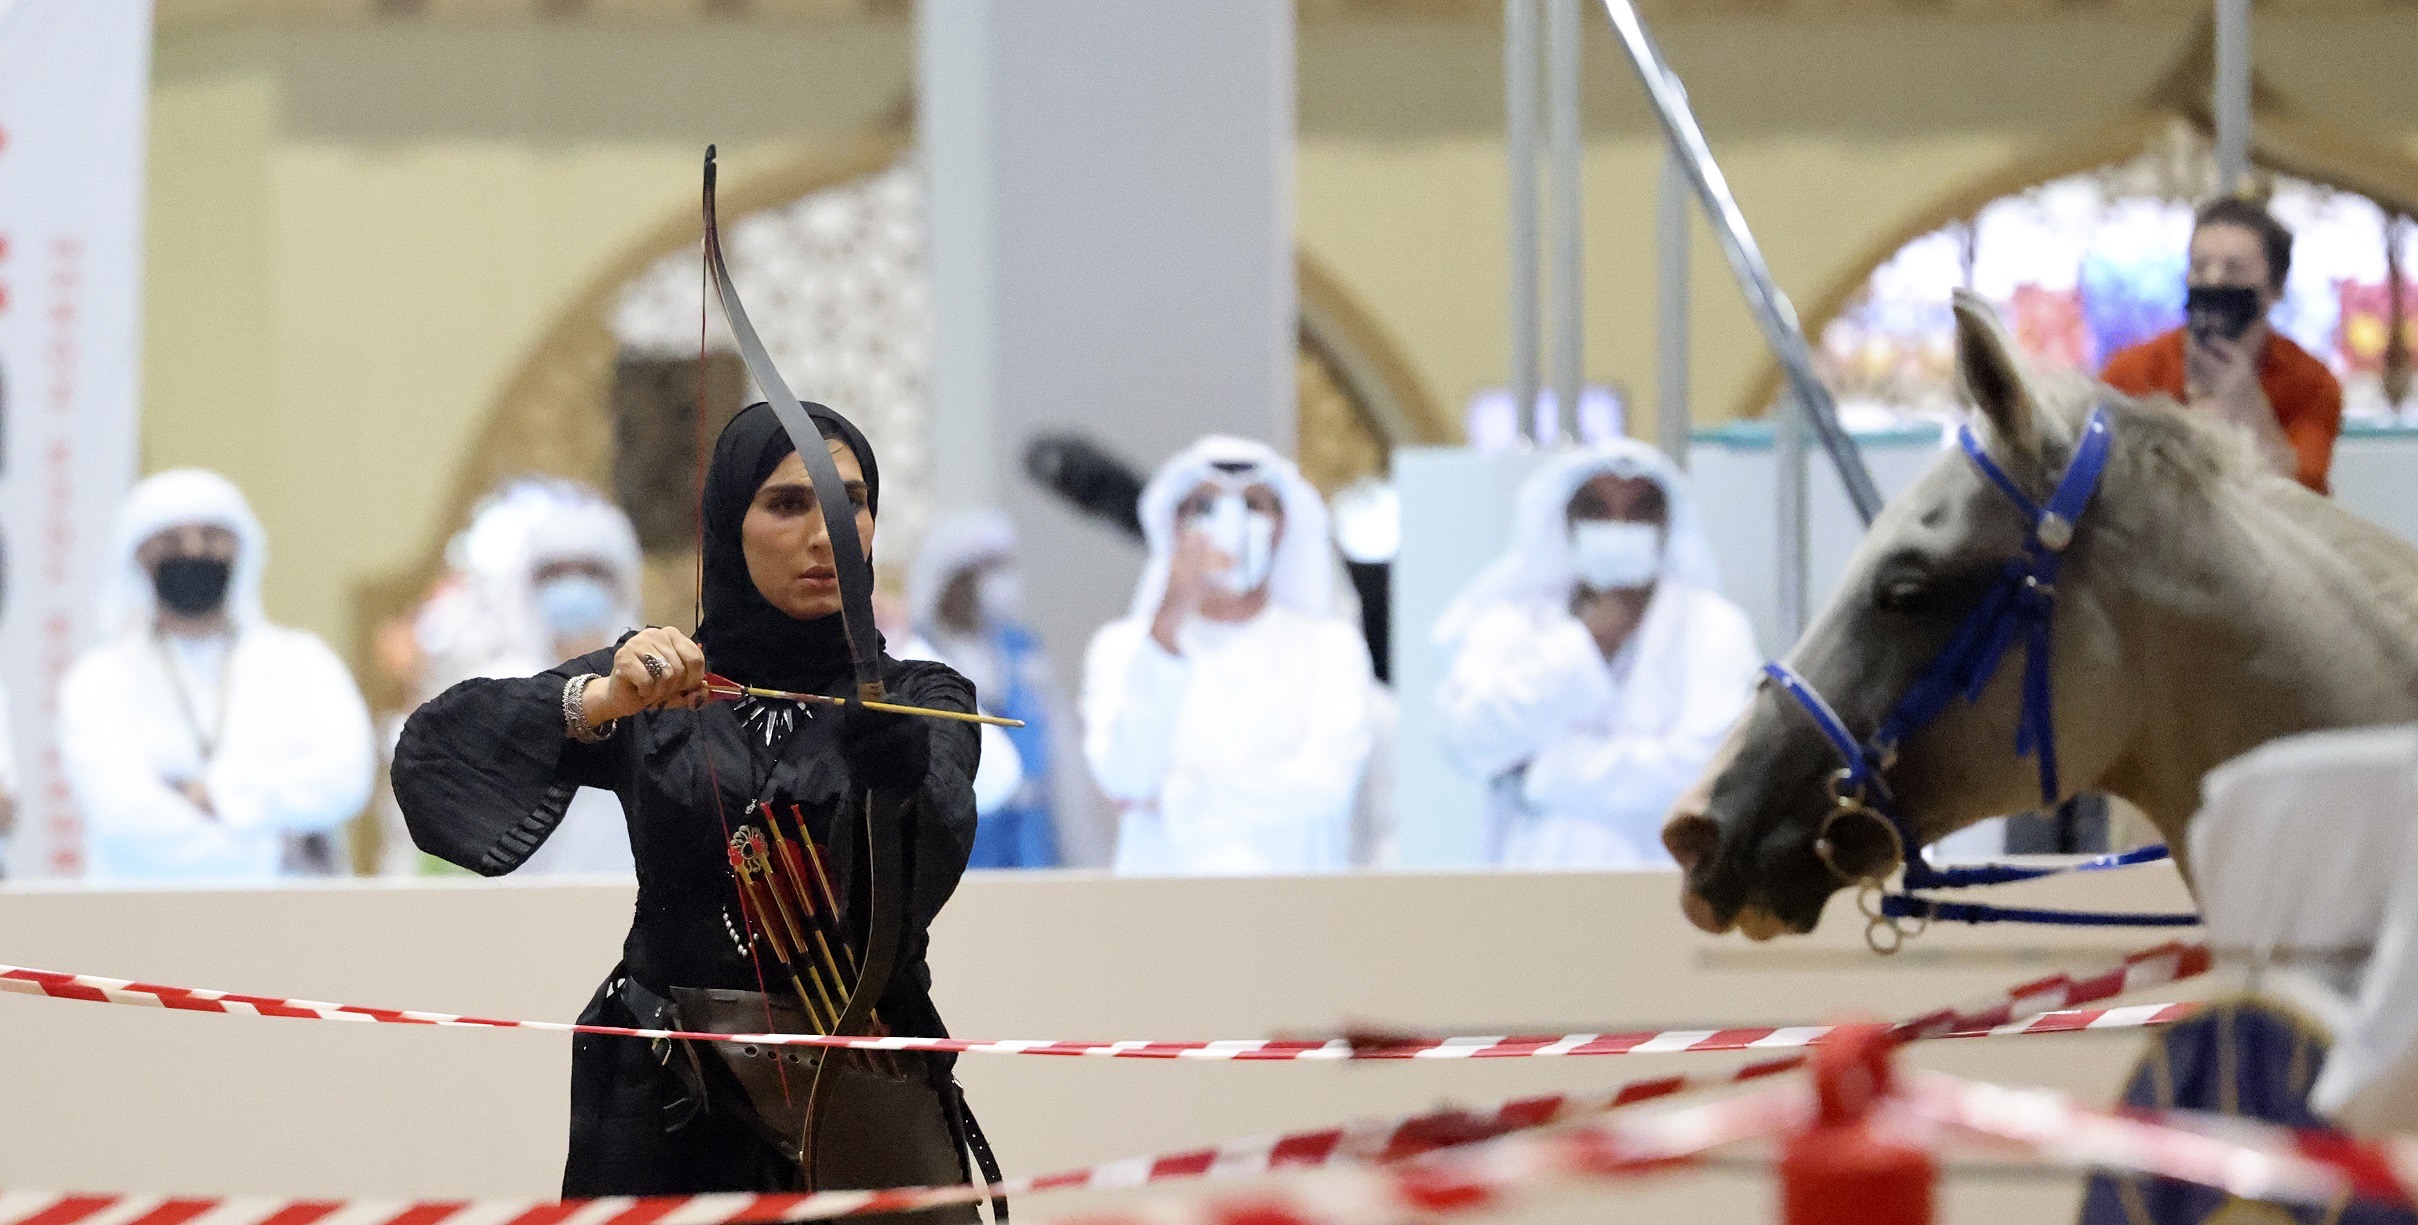 المرأة تُعزّز حضورها الفاعل في مختلف قطاعات معرض أبوظبي للصيد وبرنامج الأنشطة والفعاليات